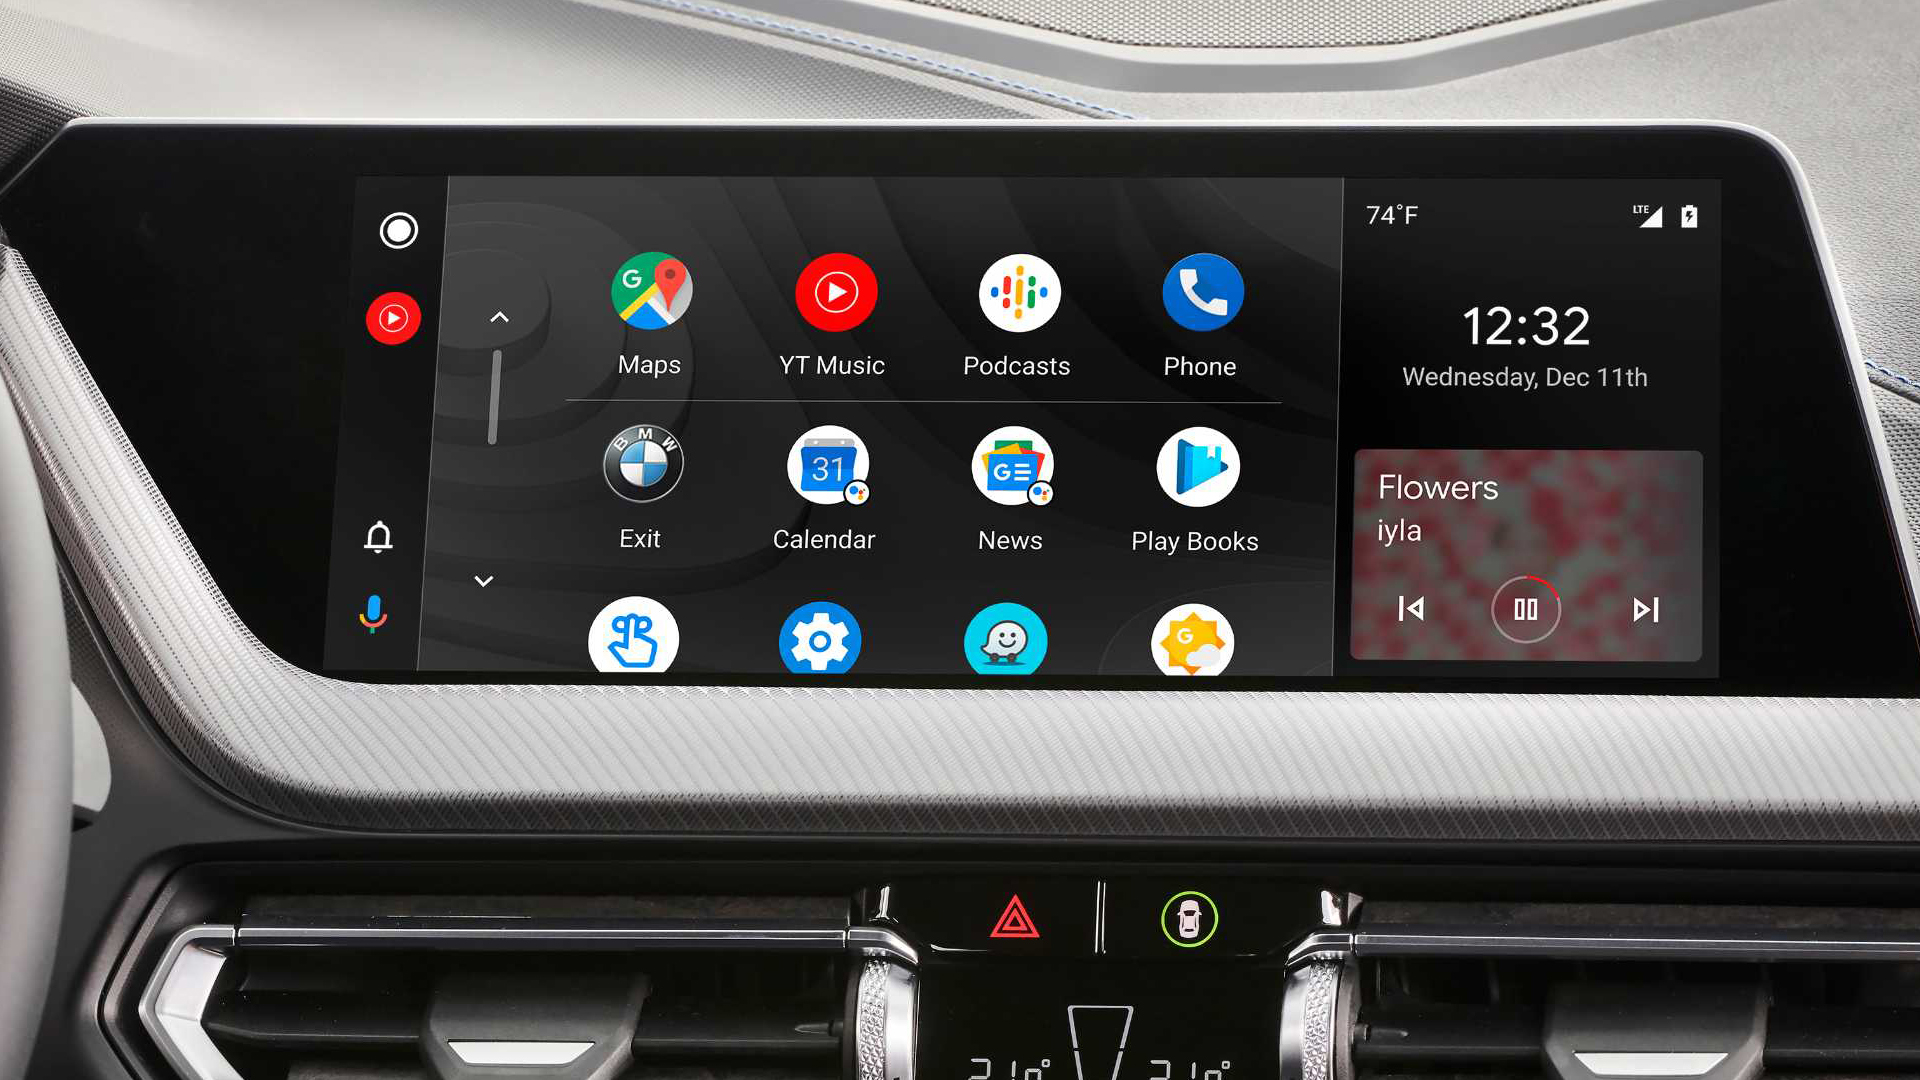 Esta es la nueva forma de tener Android Auto inalámbrico en tu coche